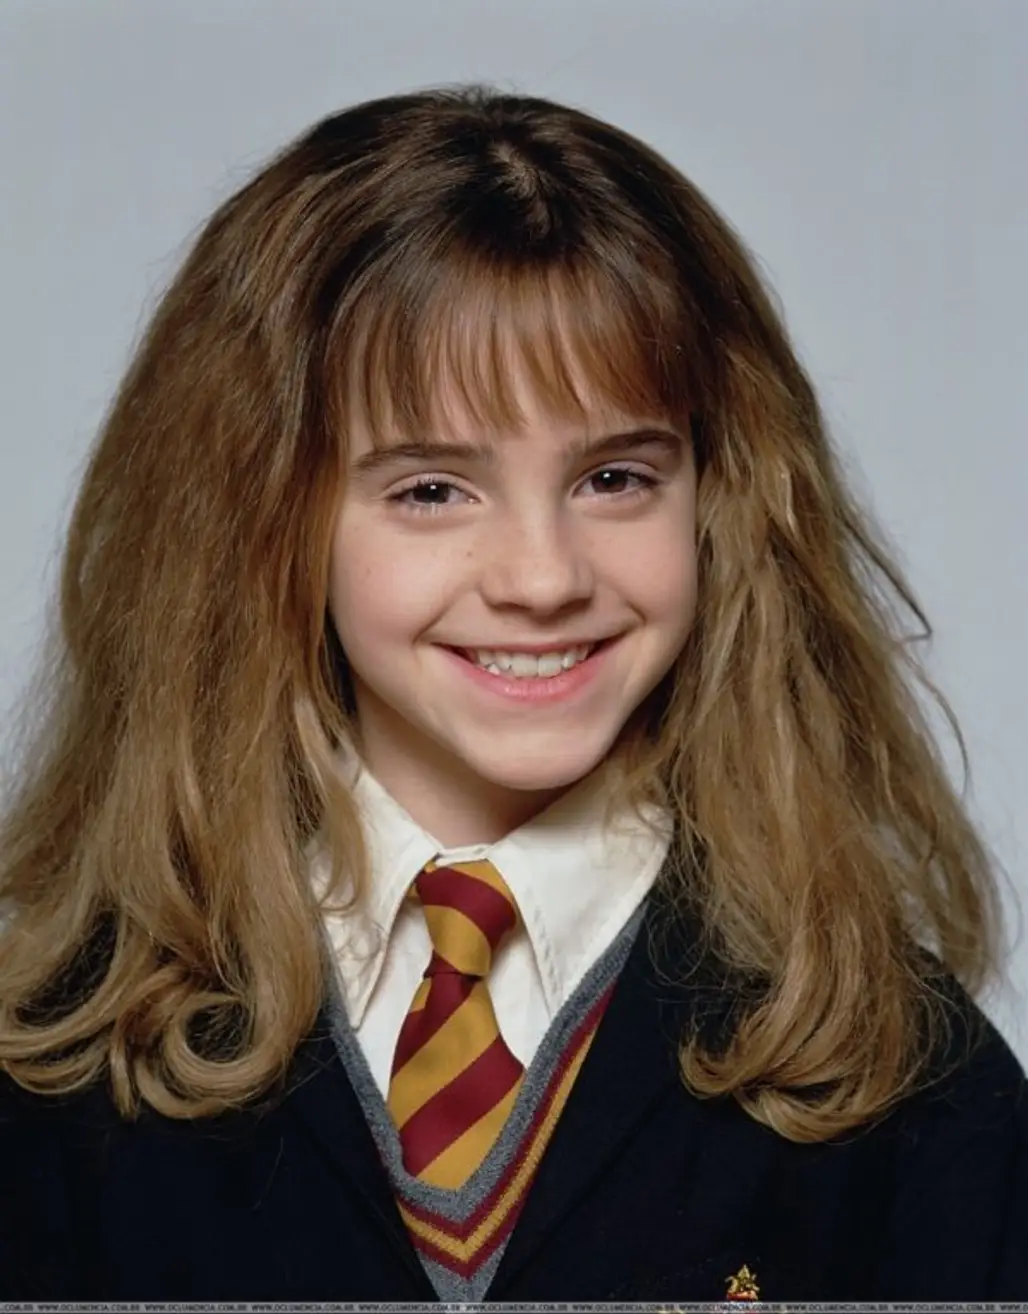 Hermione Granger then